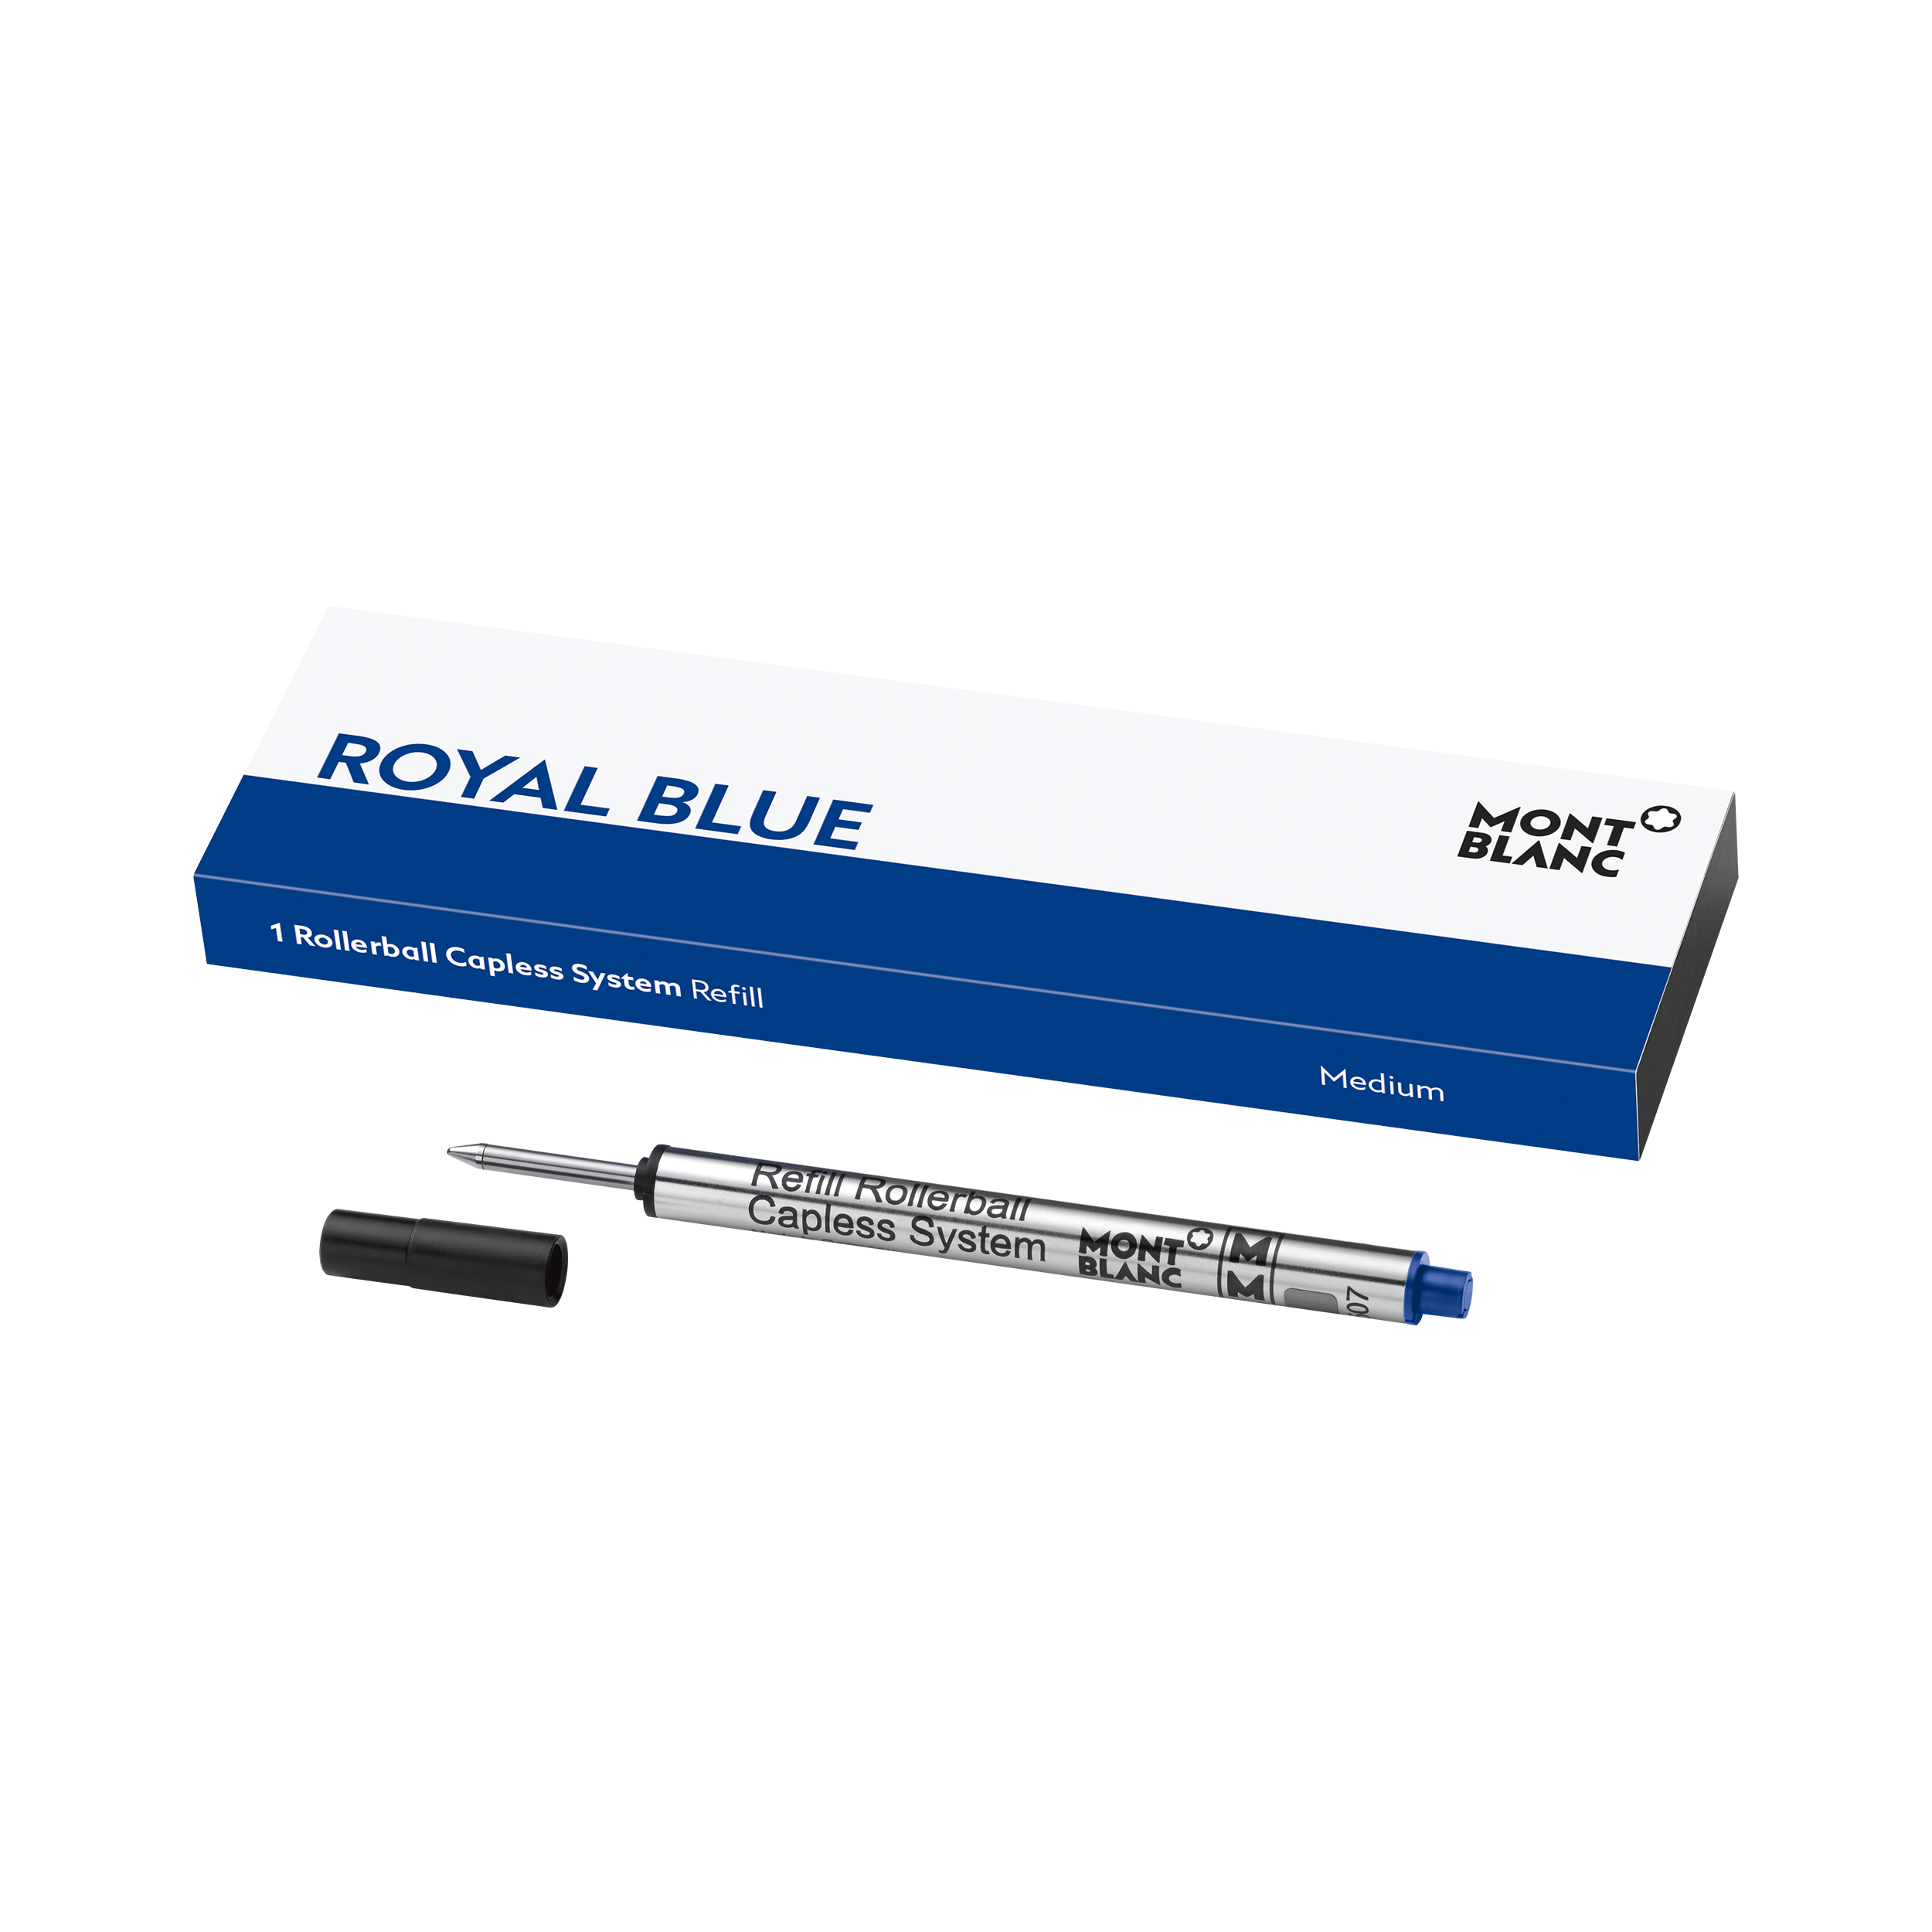 1 Rollerball Capless System Refill Medium, Royal Blue